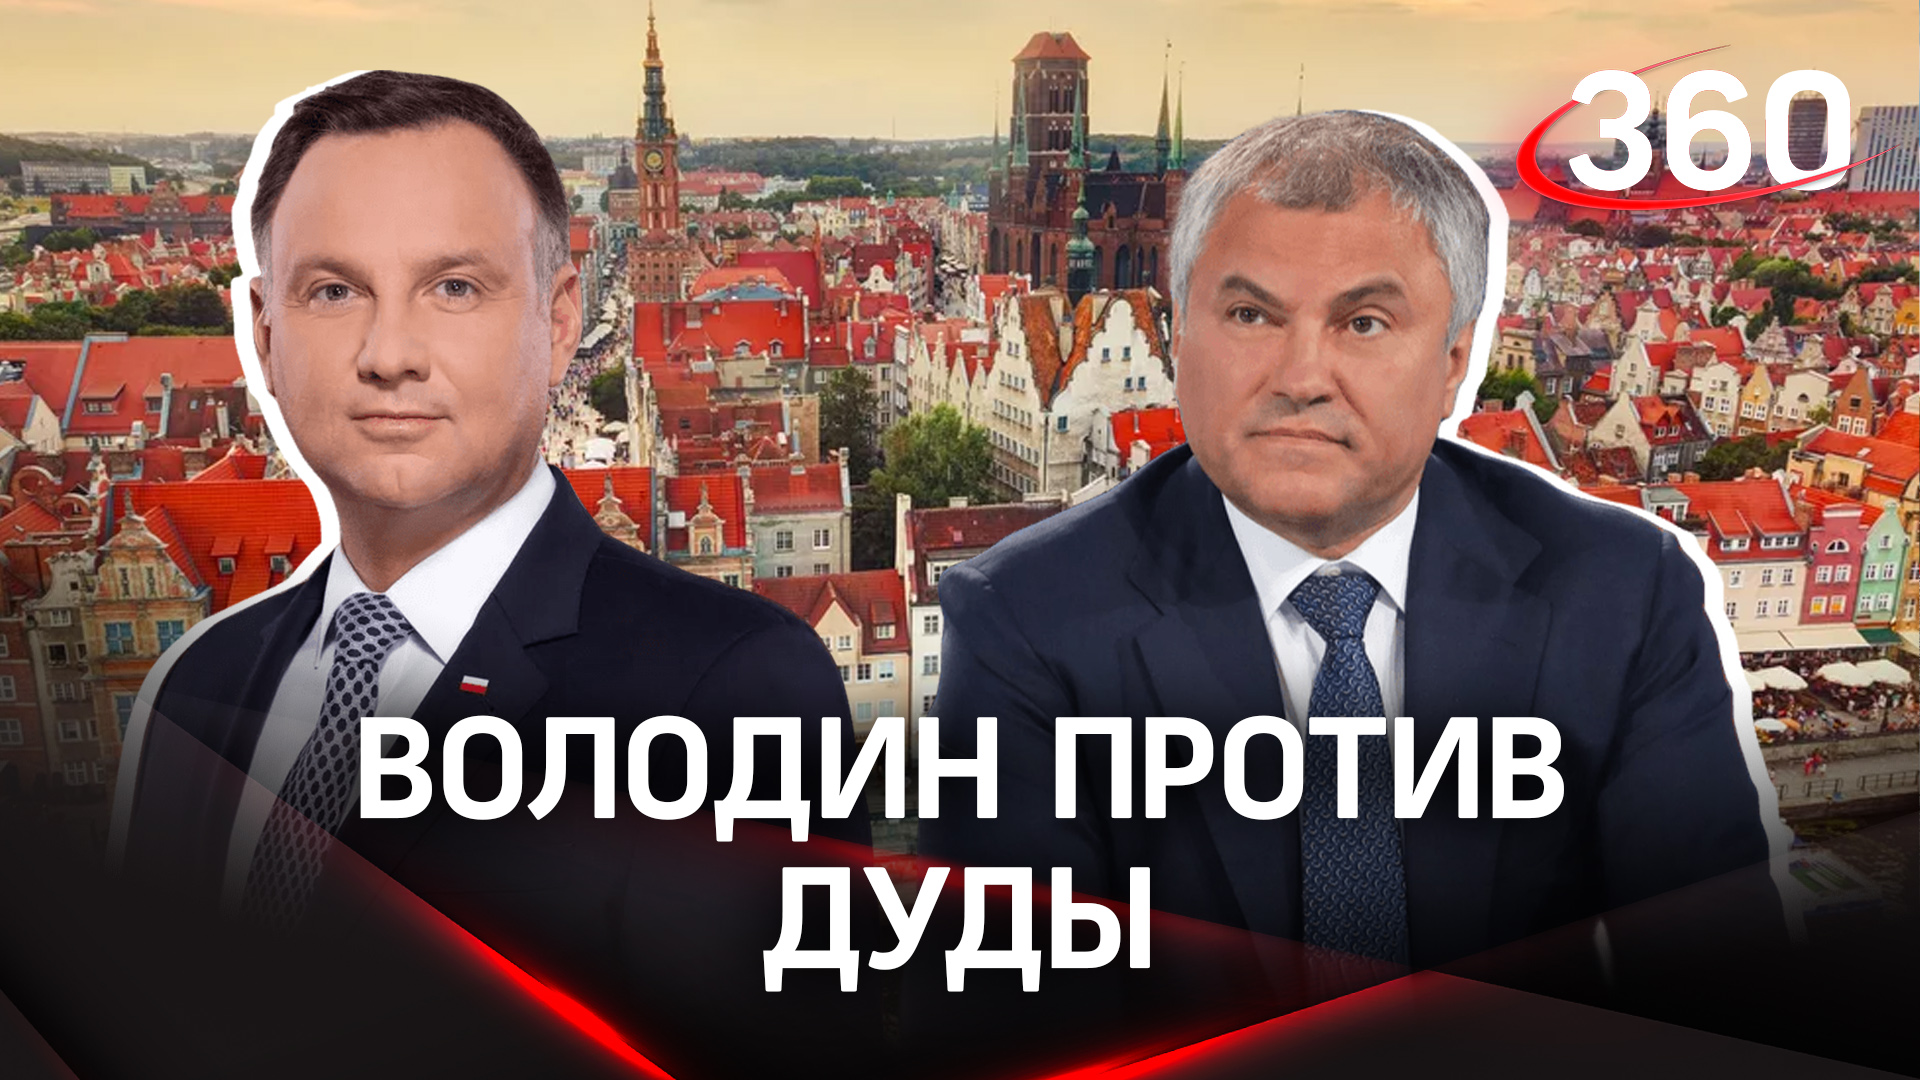 Польша требует репарации за войну от России, Володин обвиняет в реабилитации фашизма